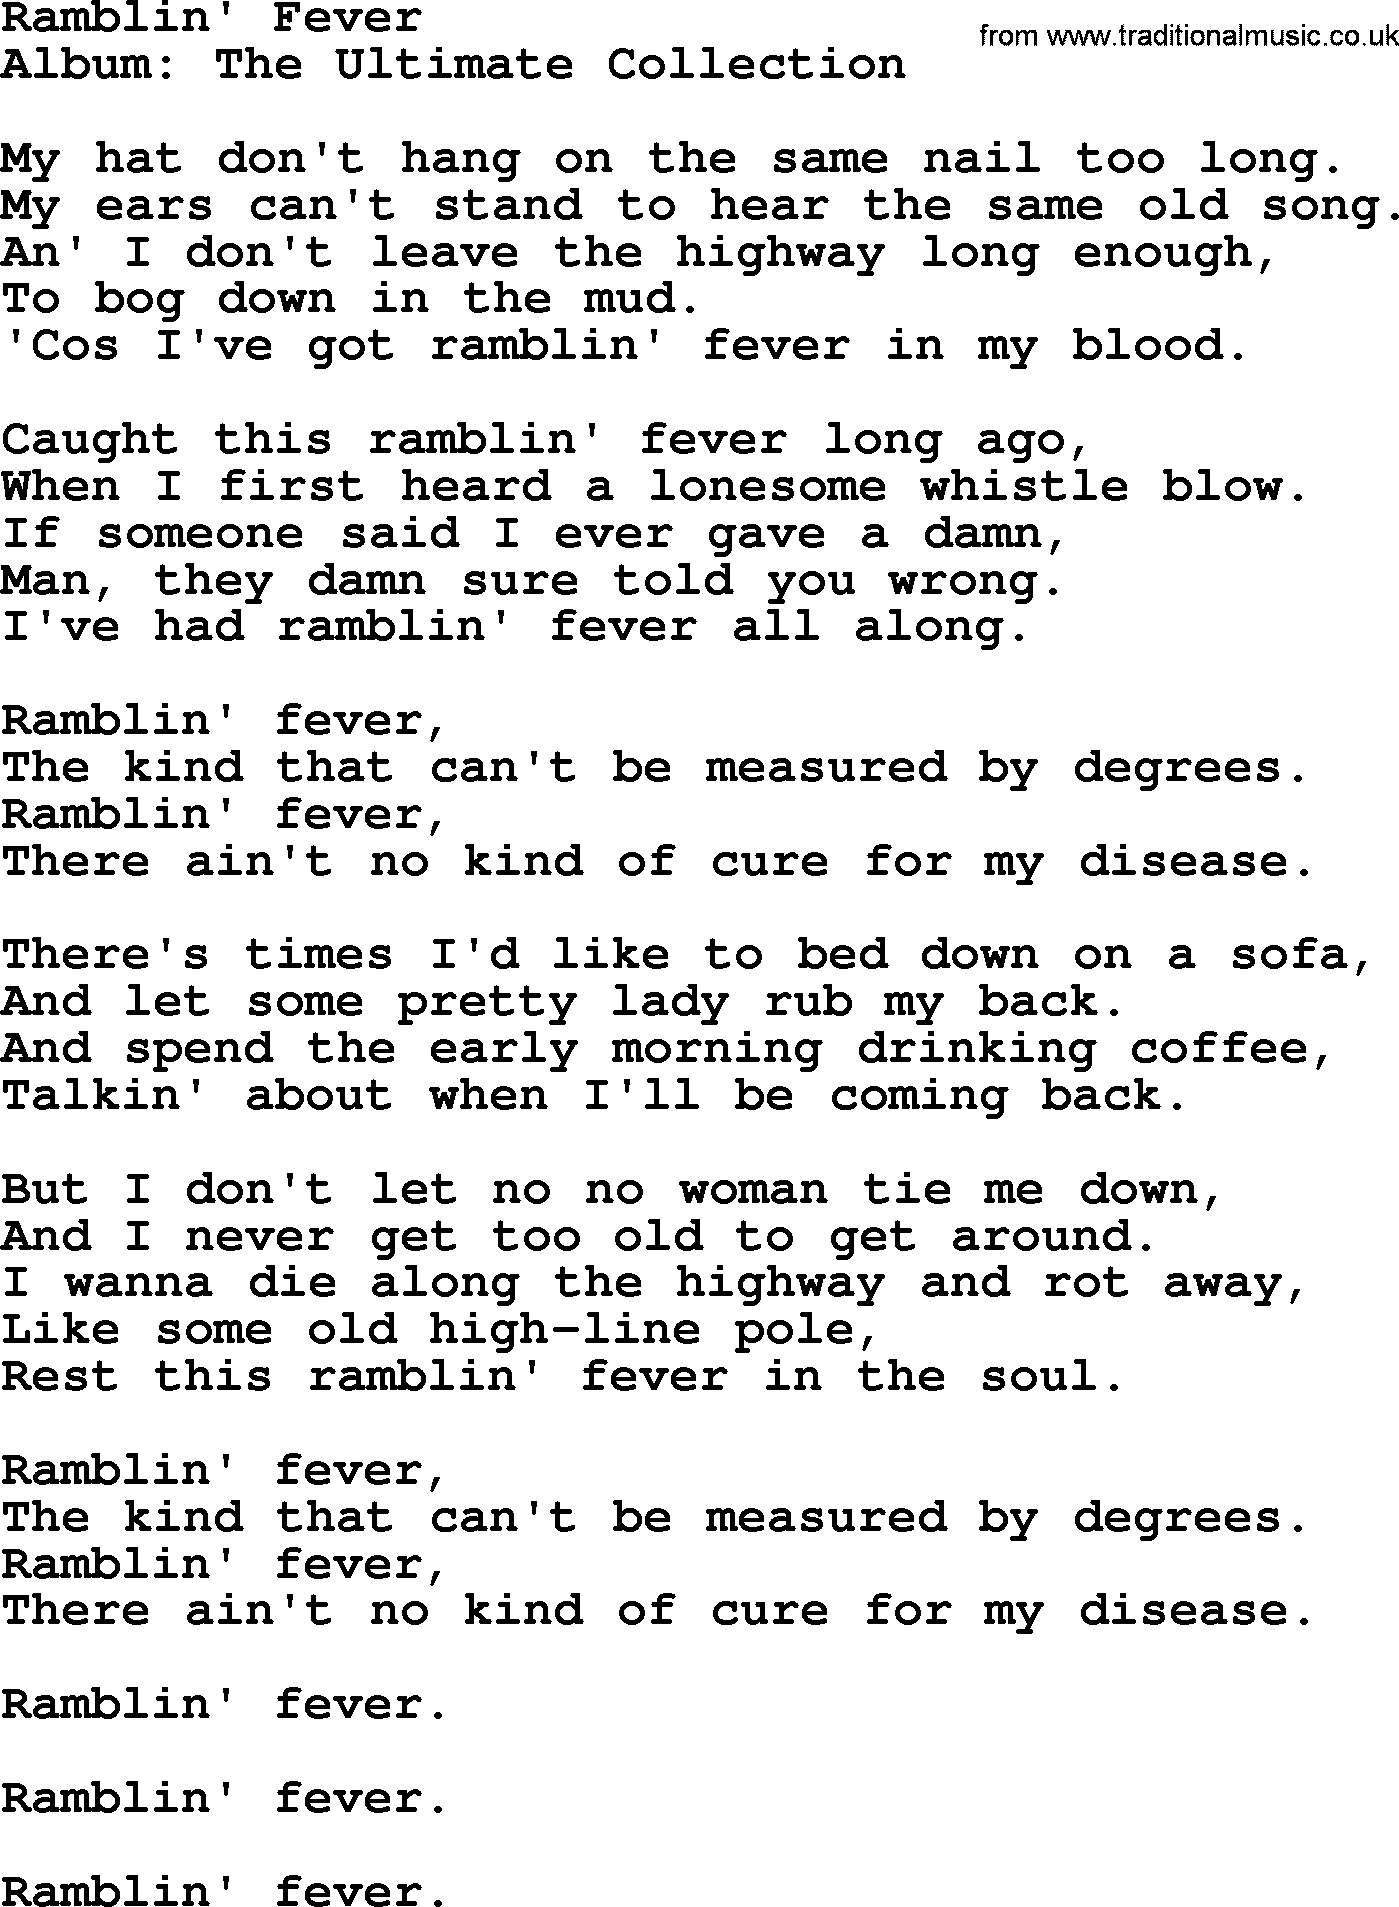 Merle Haggard song: Ramblin' Fever, lyrics.